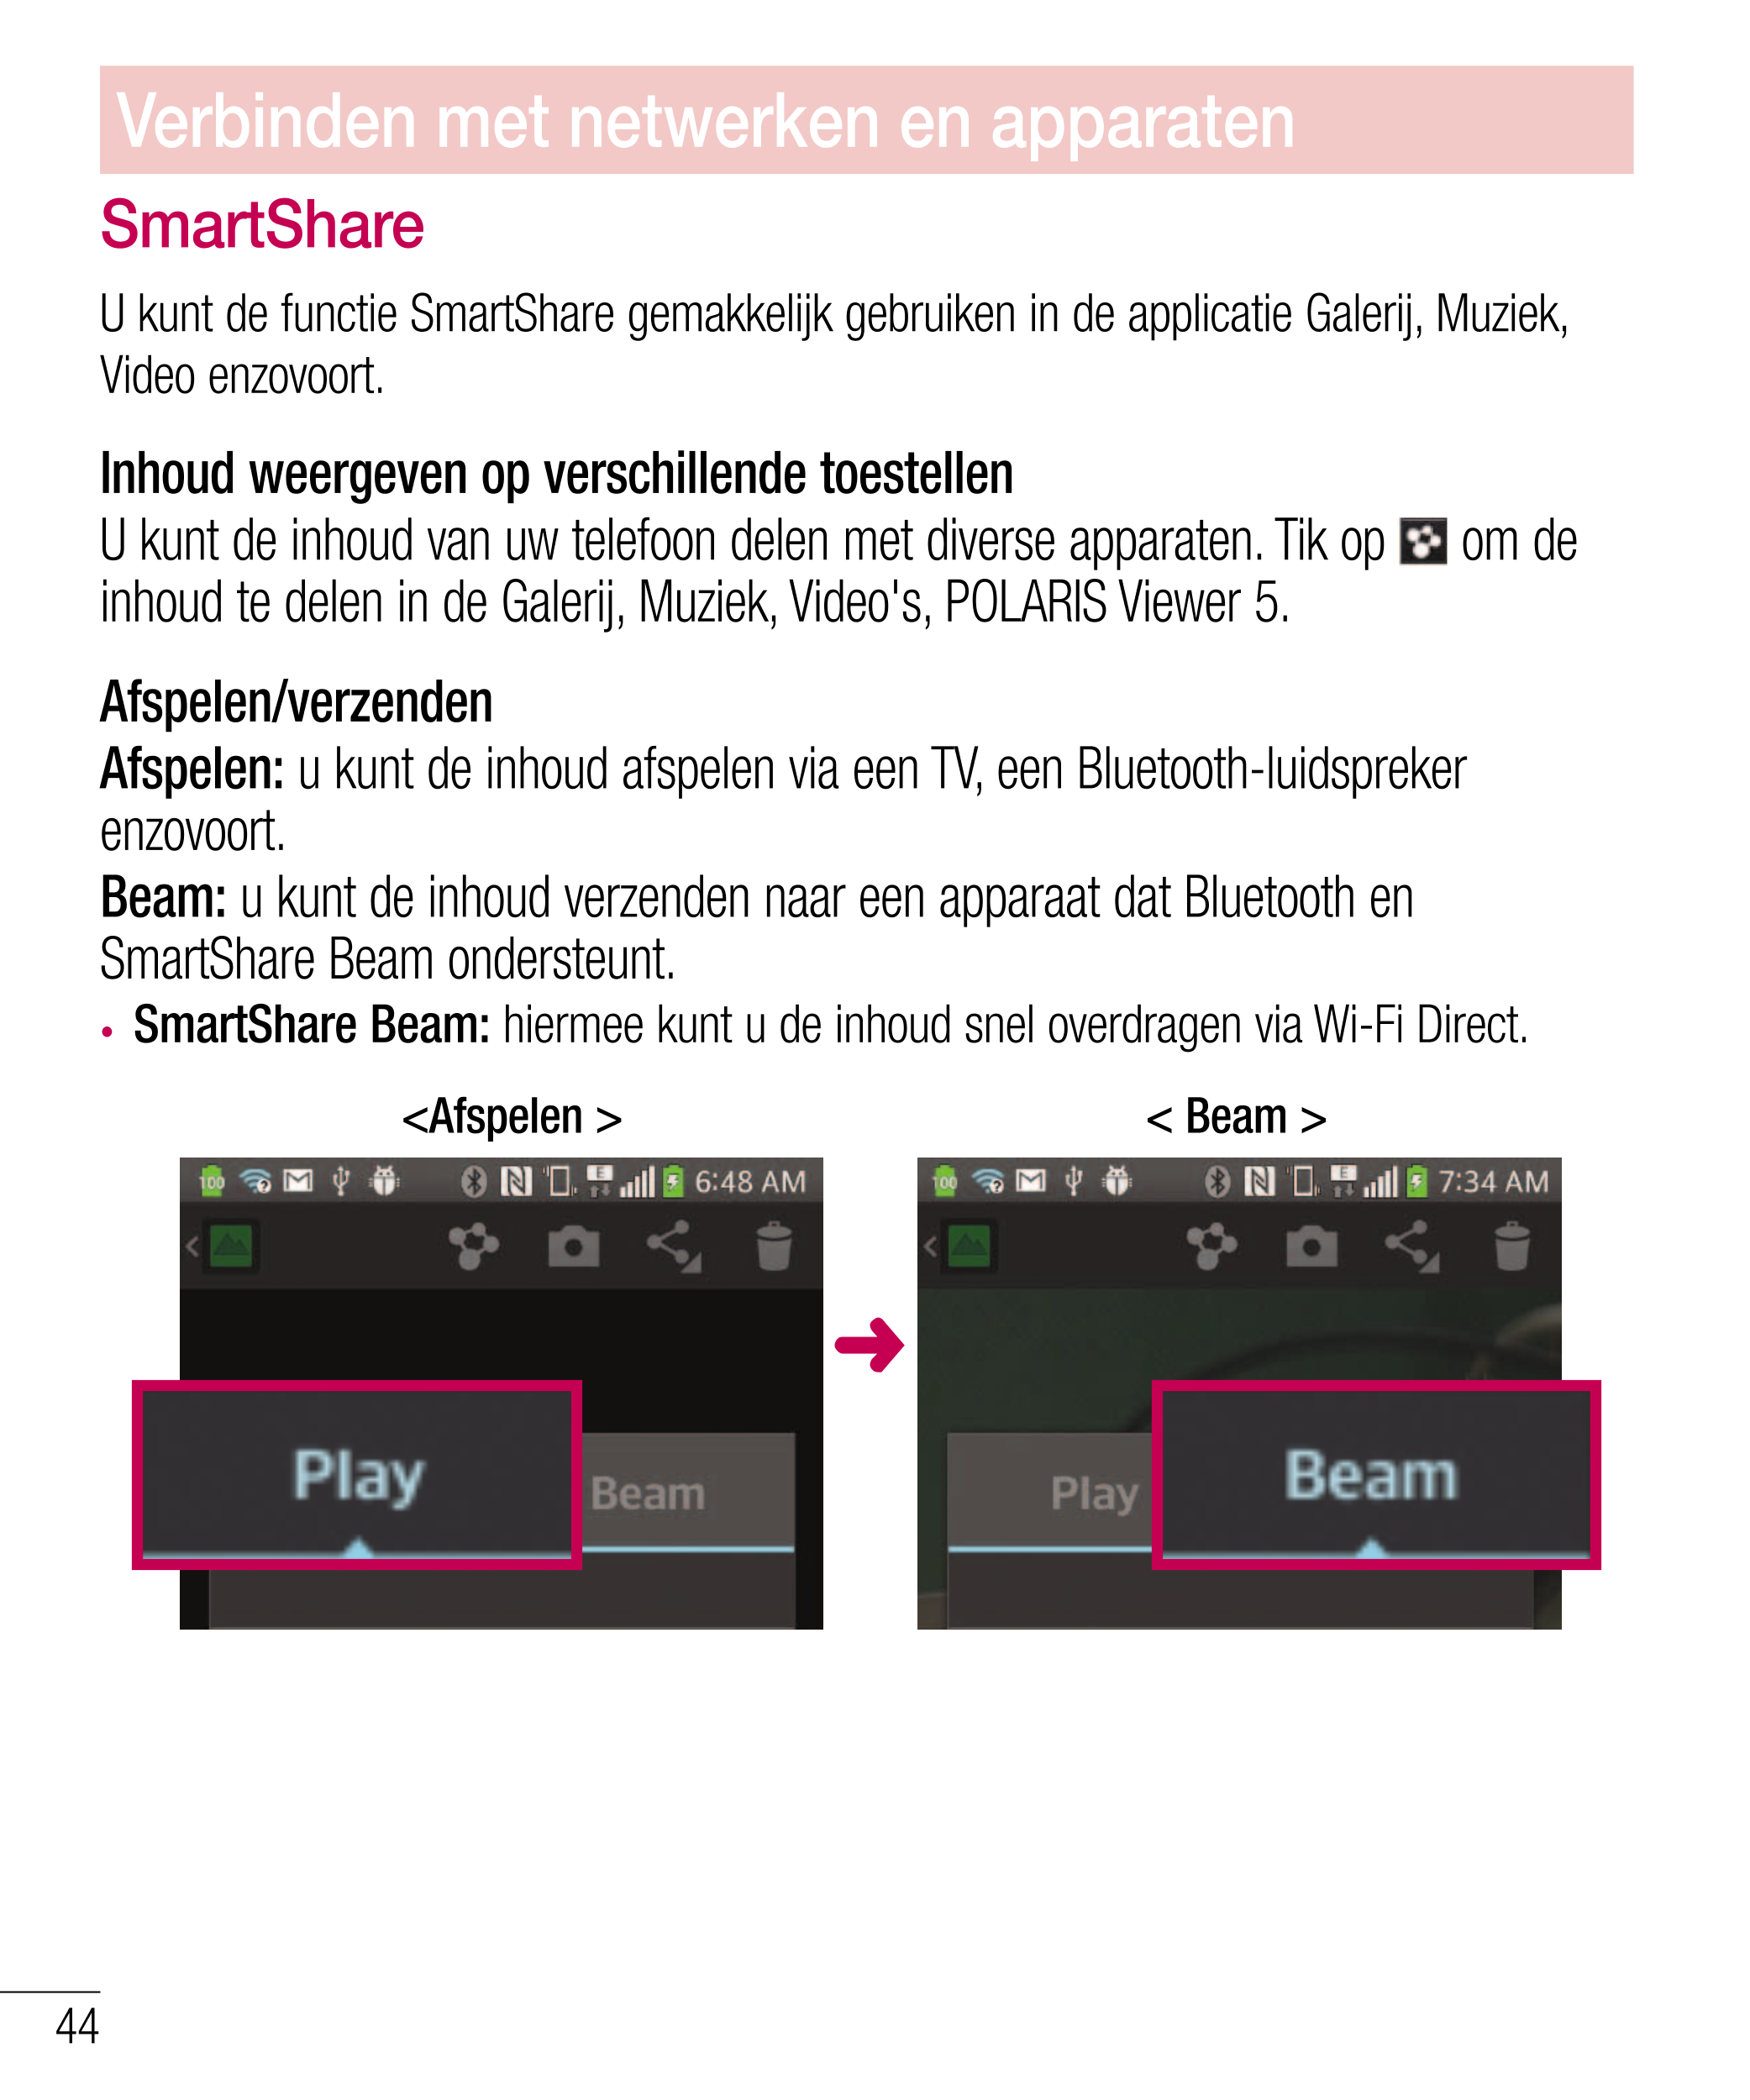 Verbinden met netwerken en apparaten
SmartShare
U kunt de functie SmartShare gemakkelijk gebruiken in de applicatie Galerij, Muz